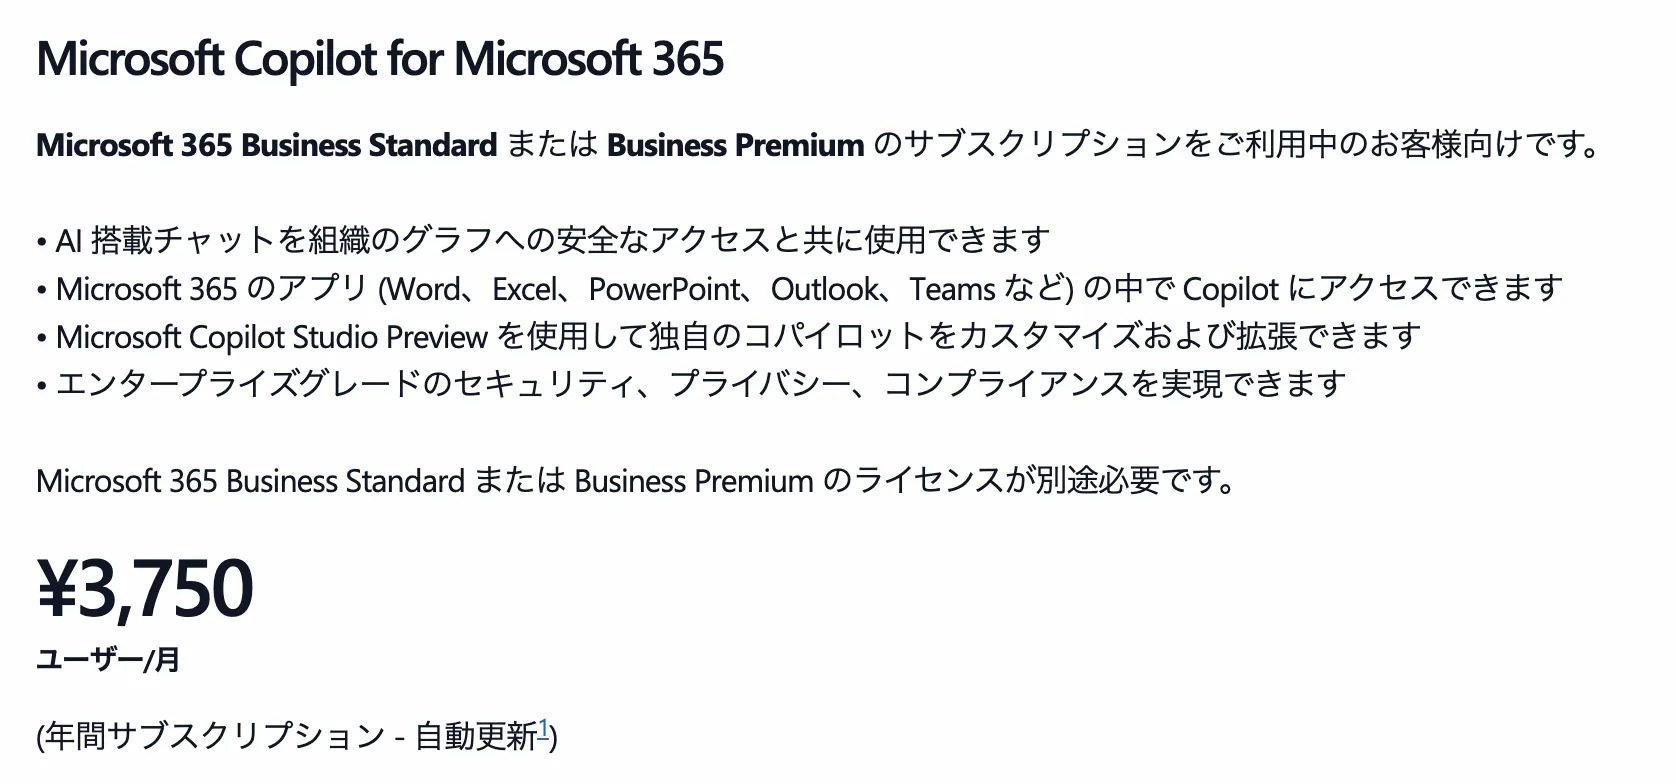 一般企業向けCopilot for Microsoft 365